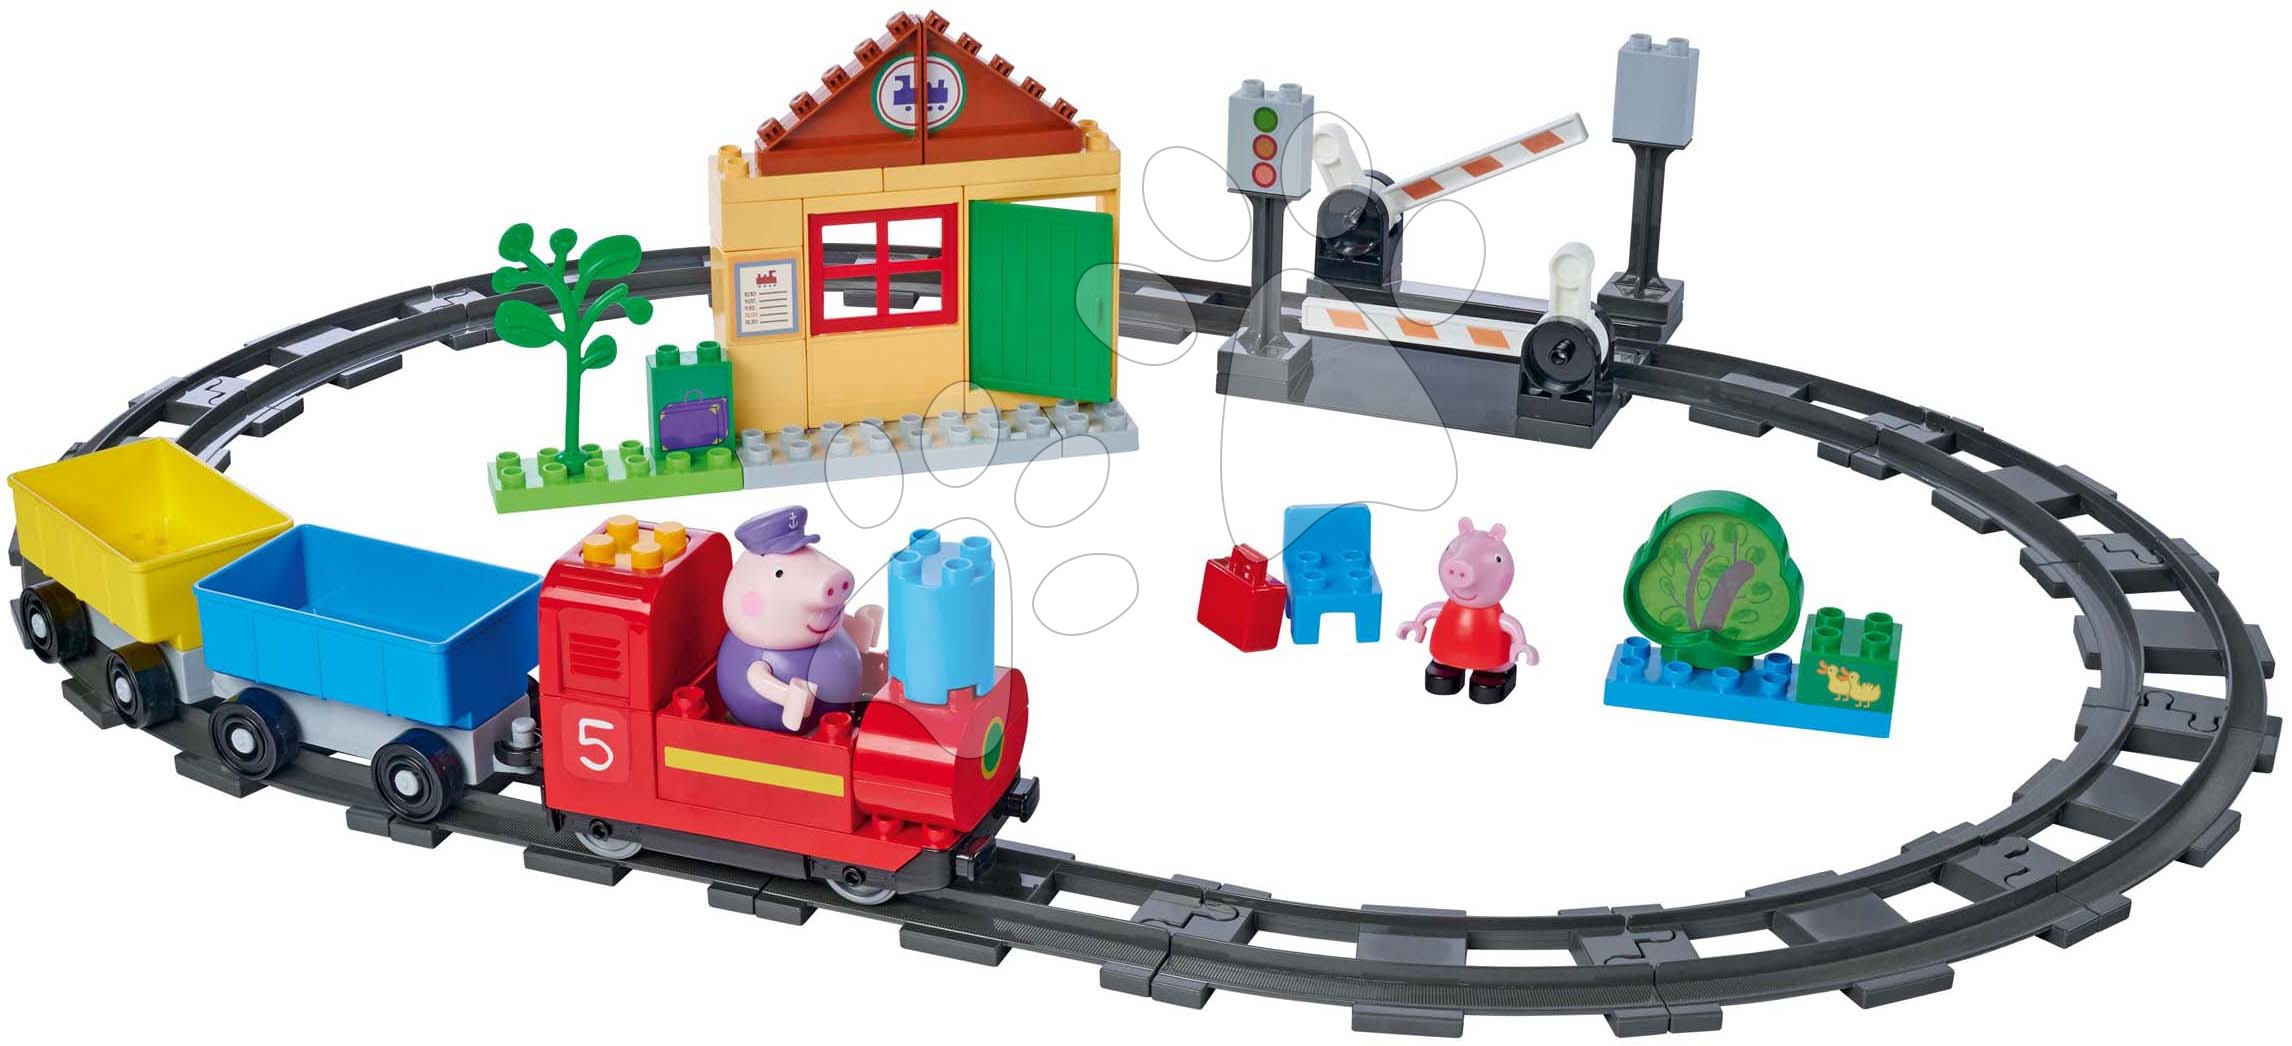 Építőjátékok BIG-Bloxx mint lego - Építőjáték elektronikus Peppa Pig Train Fun PlayBig Bloxx Big vasút hanggal és 2 figurával 55 darab 1,5-5 évesnek